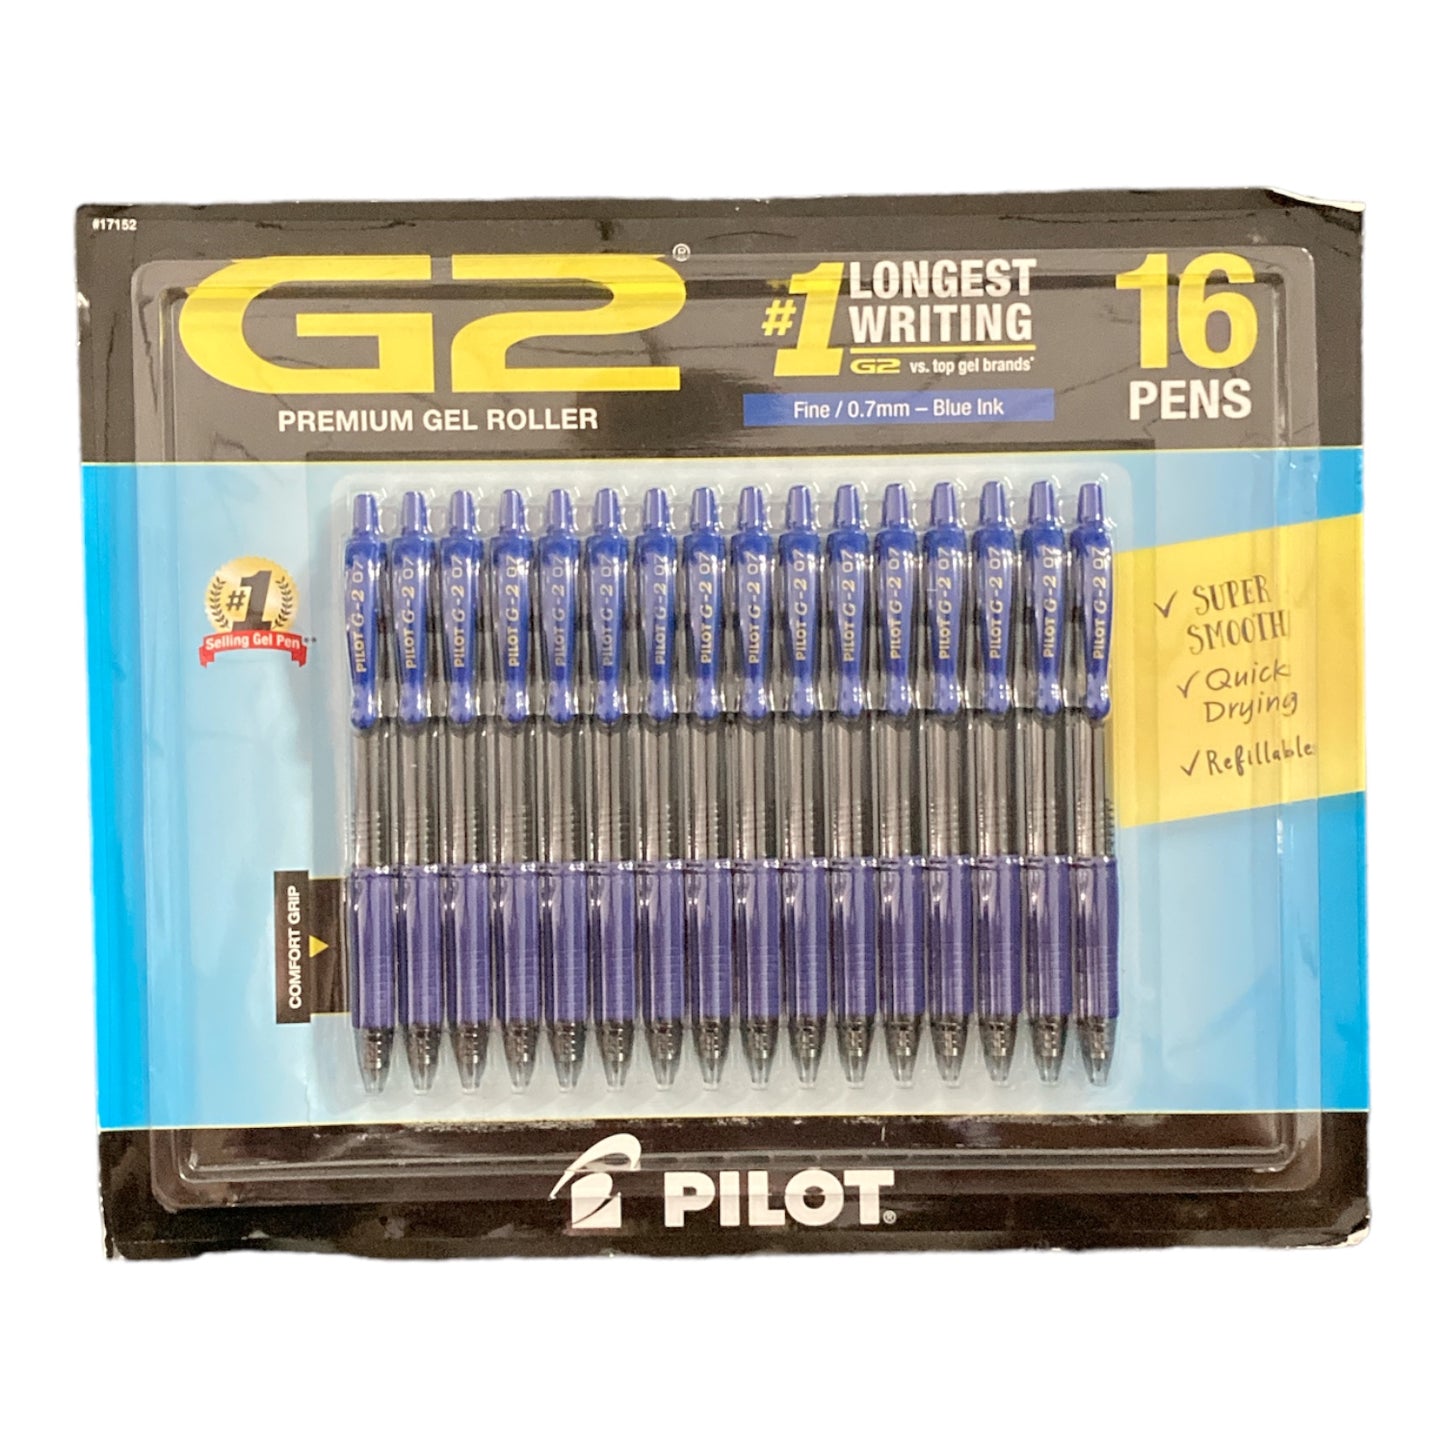 Pilot - G2 Gel Roller Ball Pens Retractable Blue Ink Fine - 16 Pens